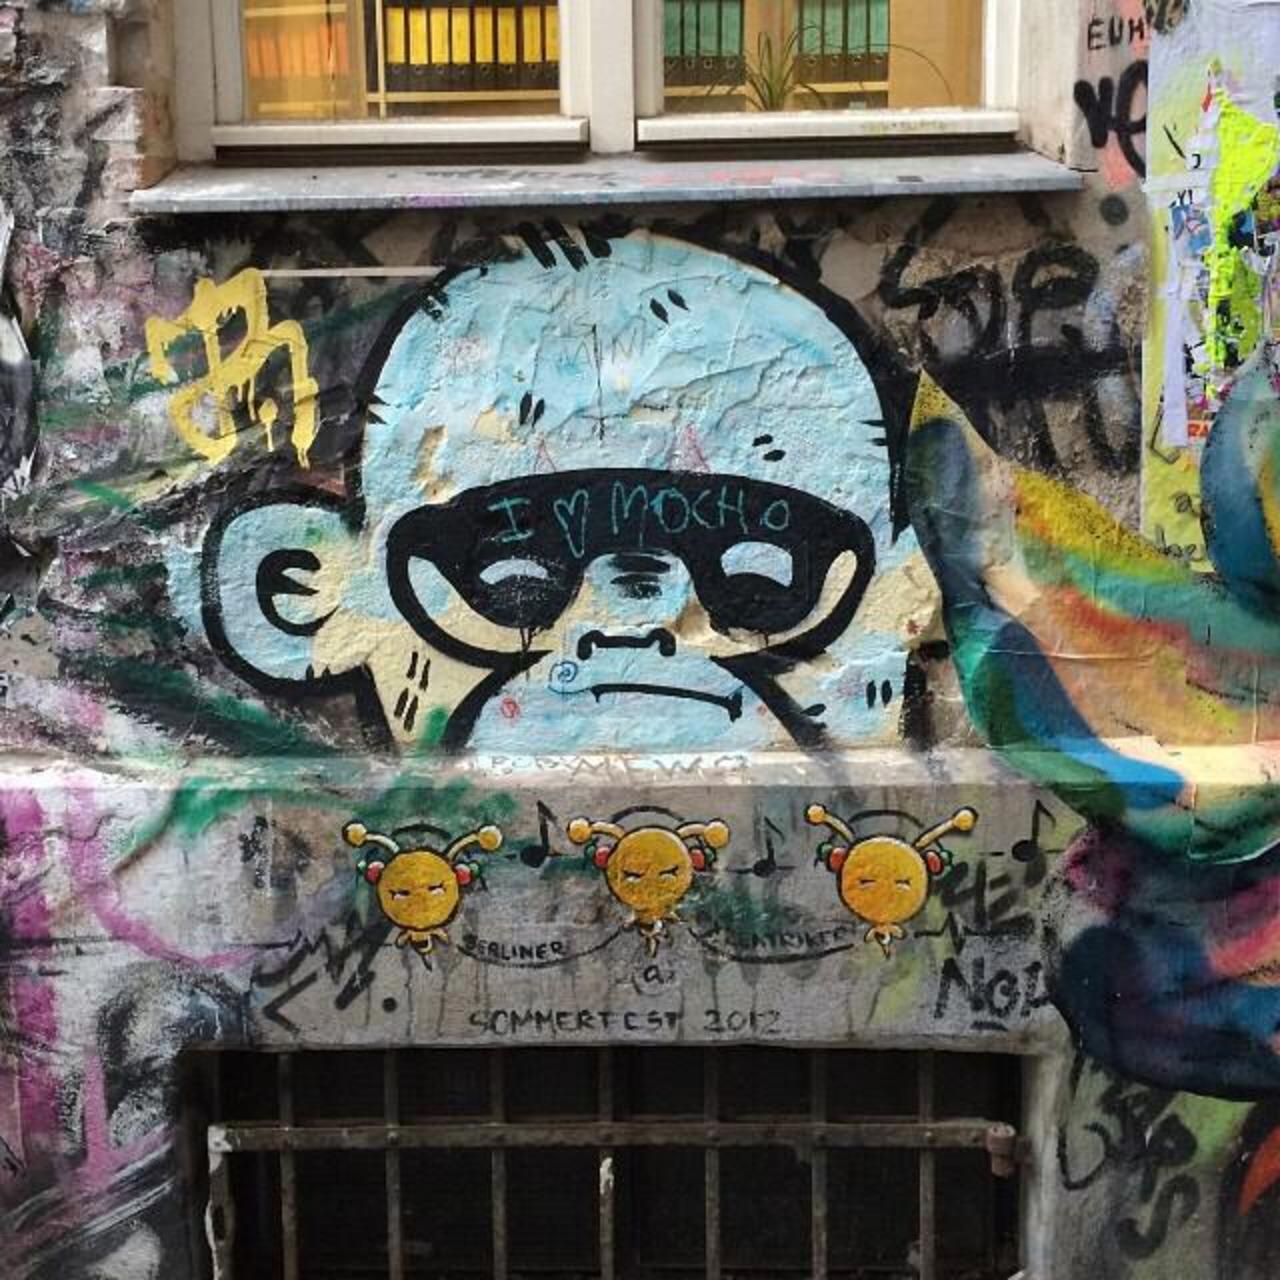 #Berlin #Allemagne #streetart #street #art #urbanart #urbantag #graffiti #streetartberlin by becombegeek http://t.co/7ZufUCpNOe